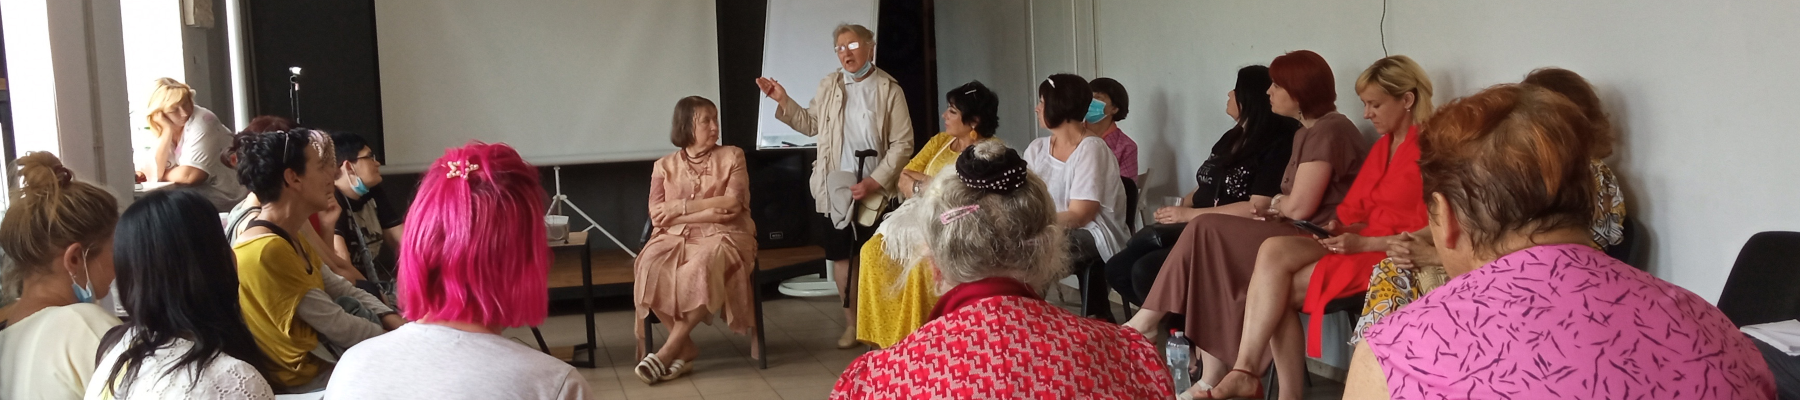 Ukrainische Frauen sitzen im Kreis und diskutieren